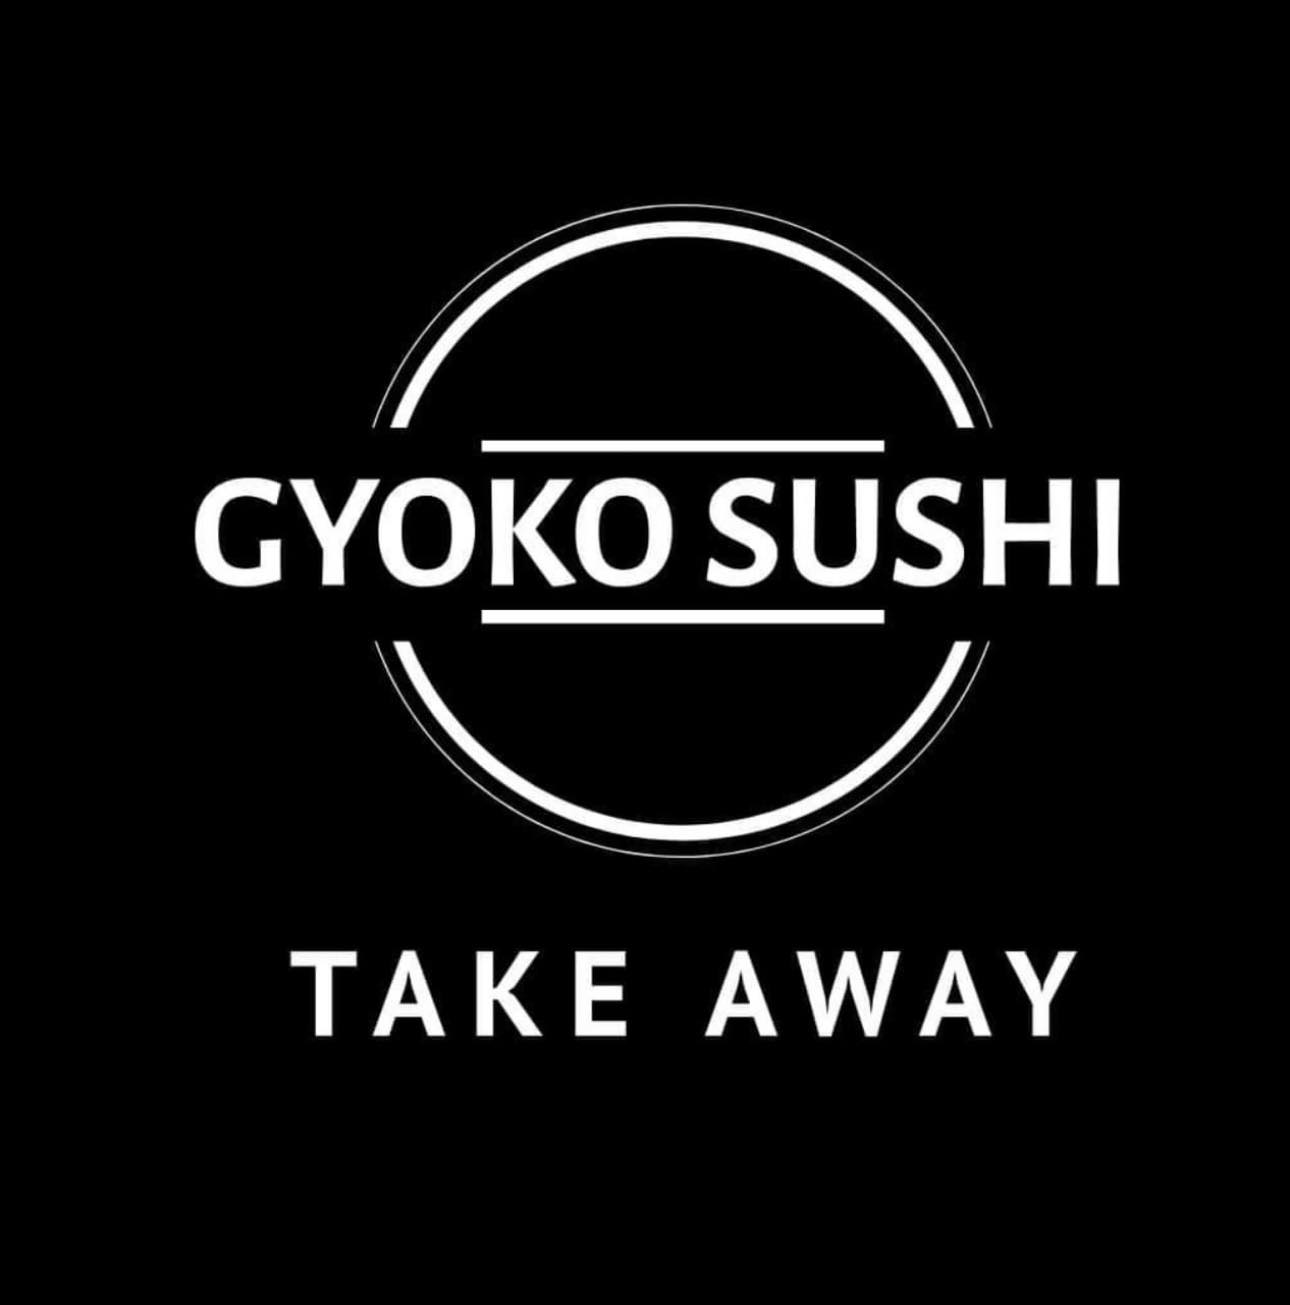 GYOKO SUSHI Słubice – otwarcie nowego lokalu 26 stycznia